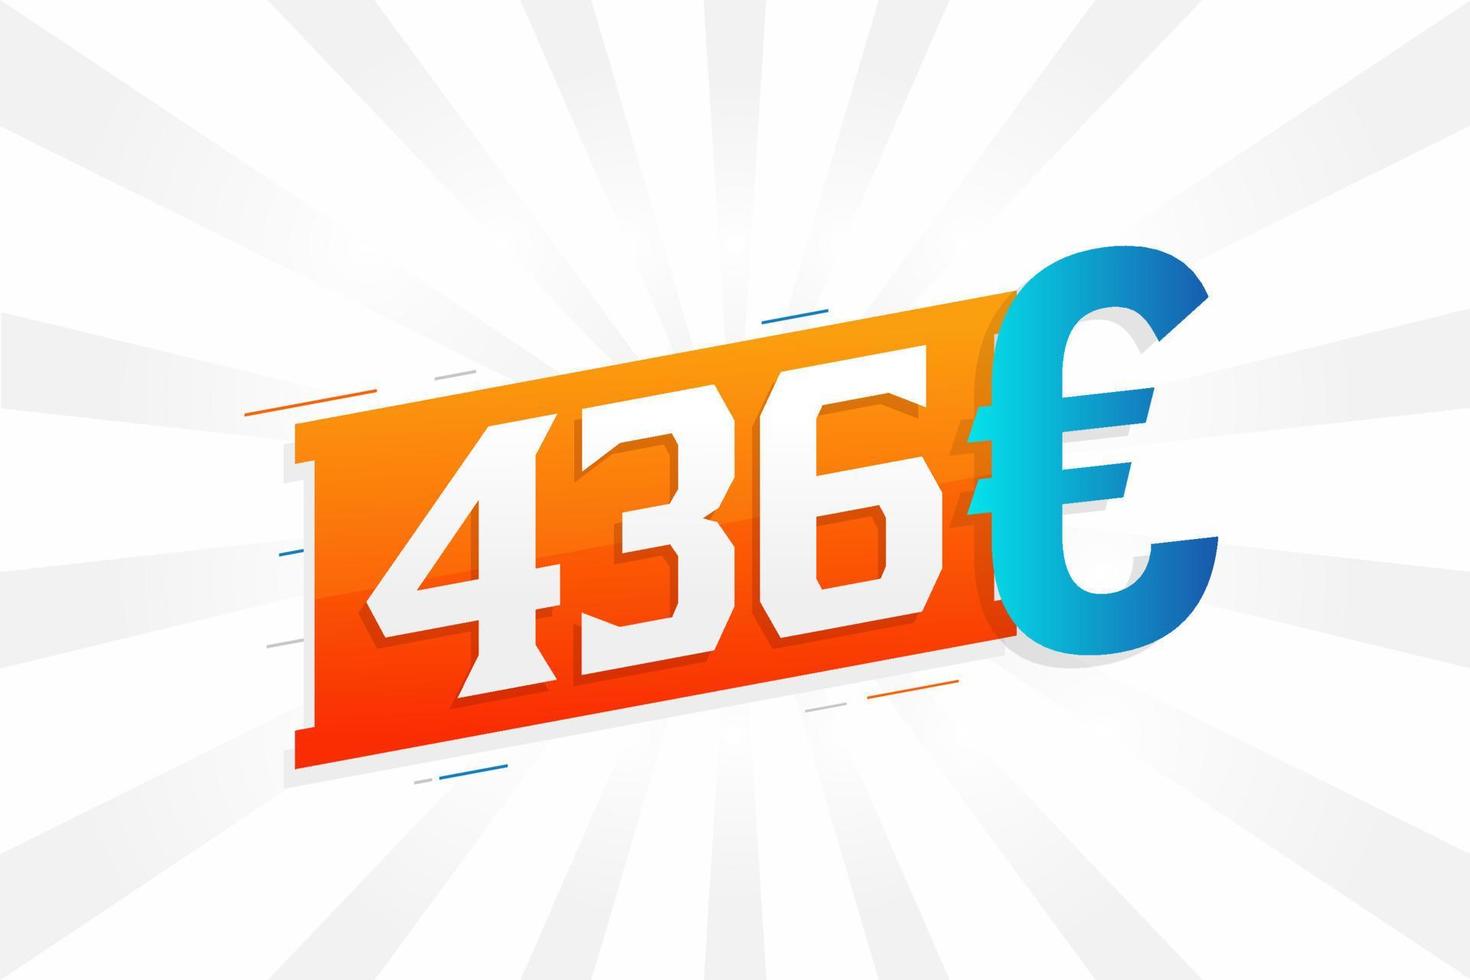 436 Euro Currency vector text symbol. 436 Euro European Union Money stock vector